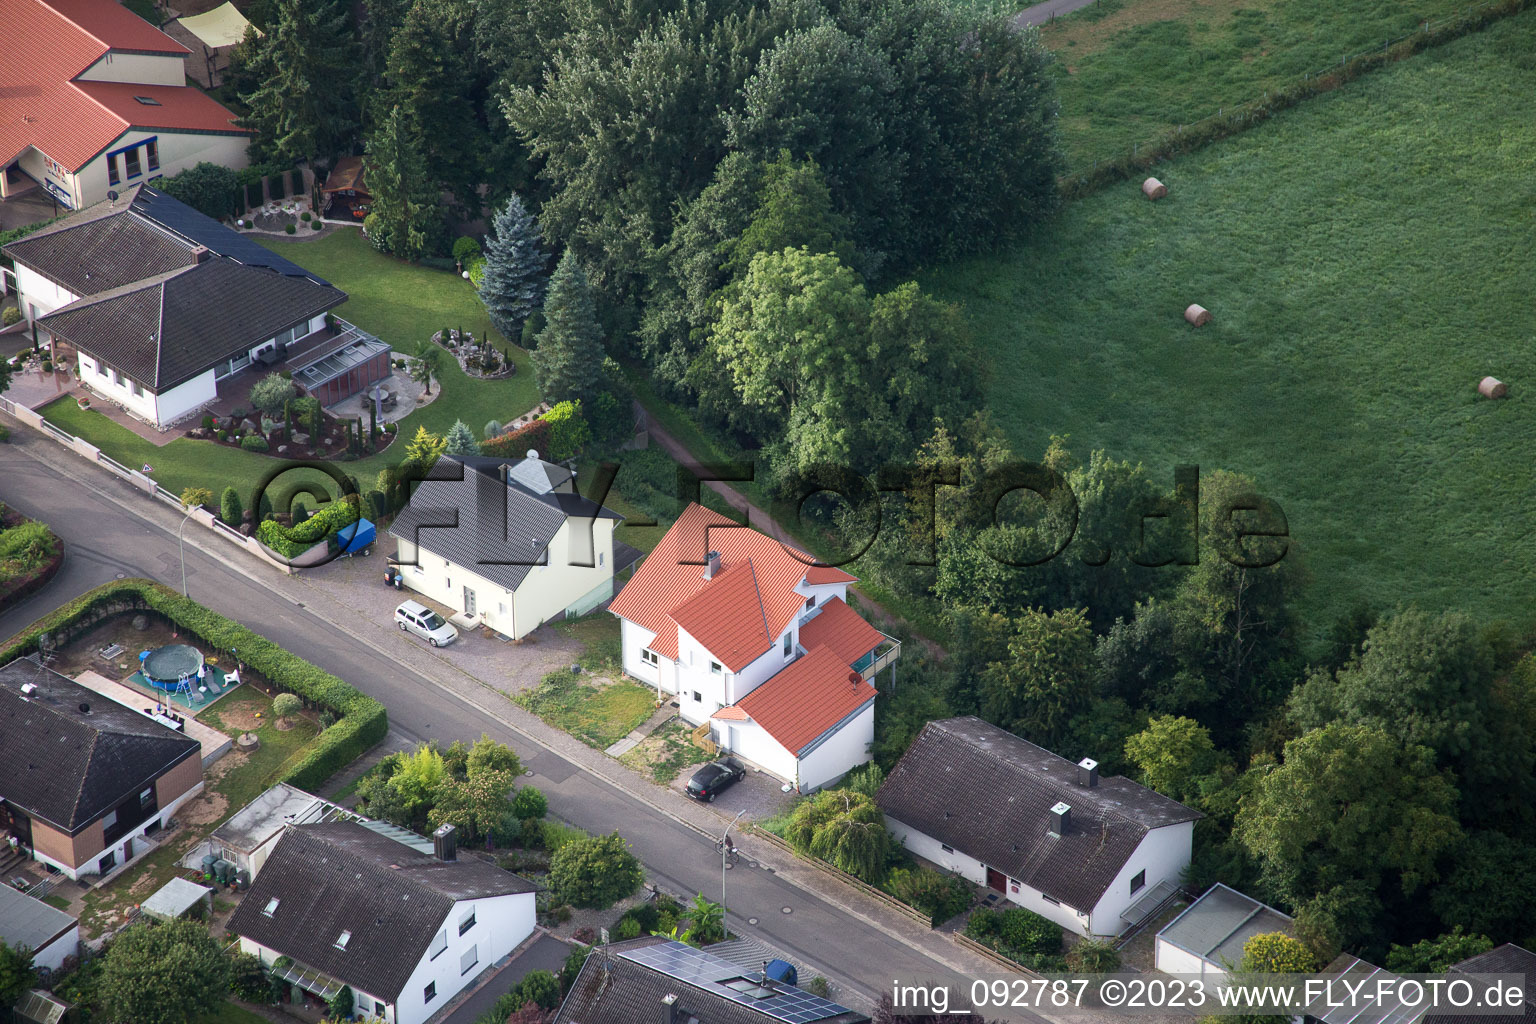 Ortsteil Billigheim in Billigheim-Ingenheim im Bundesland Rheinland-Pfalz, Deutschland aus der Luft betrachtet